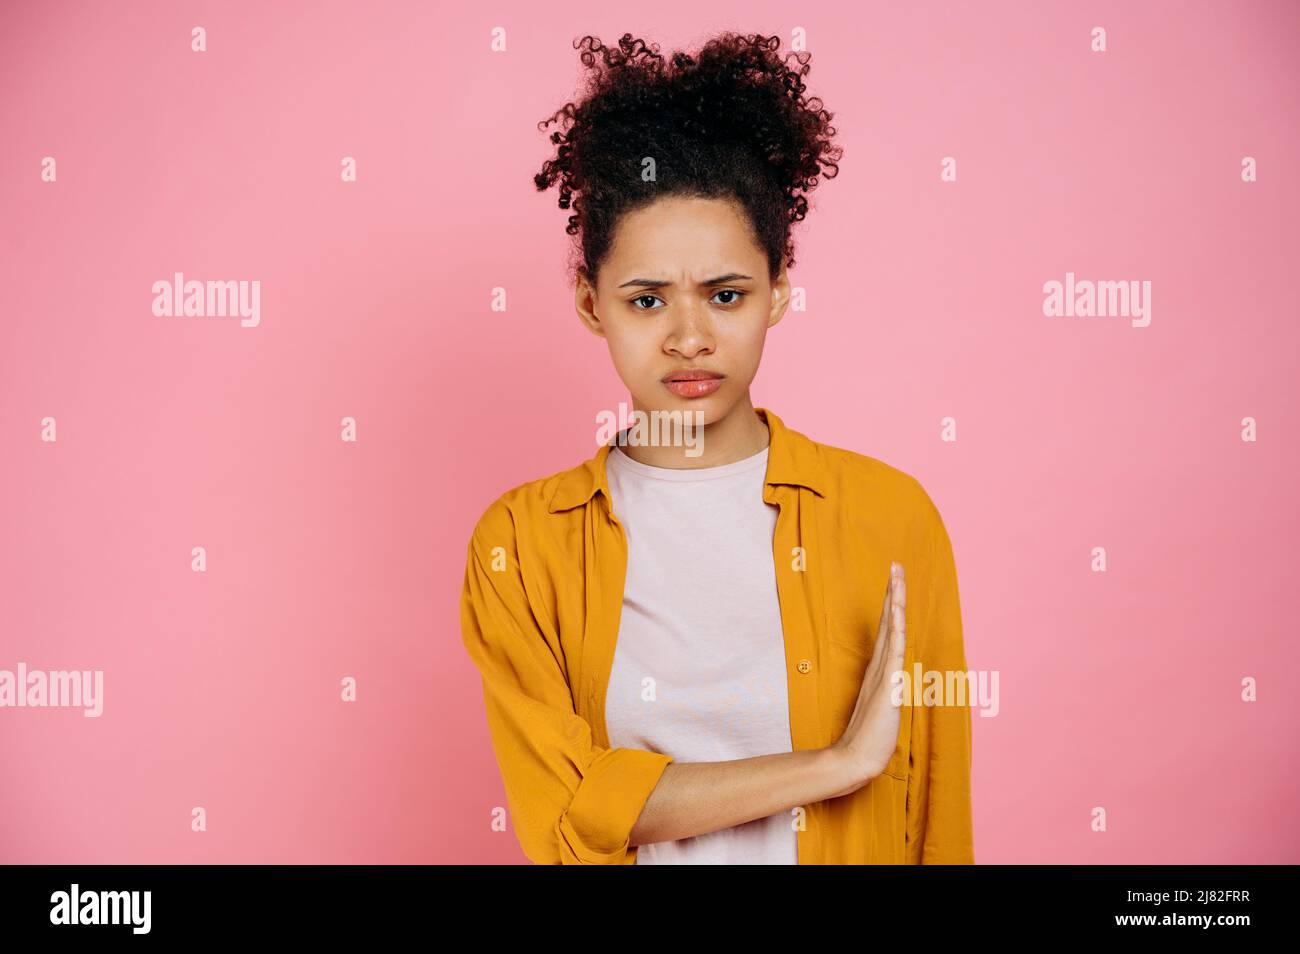 Trauriges, lockiges afroamerikanisches Mädchen in legerer Kleidung, das Nein sagt, zeigt eine Stop-Geste mit der Handfläche zur Seite, drückt Unzufriedenheit aus, steht auf einem isolierten rosa Hintergrund und blickt auf die Kamera Stockfoto